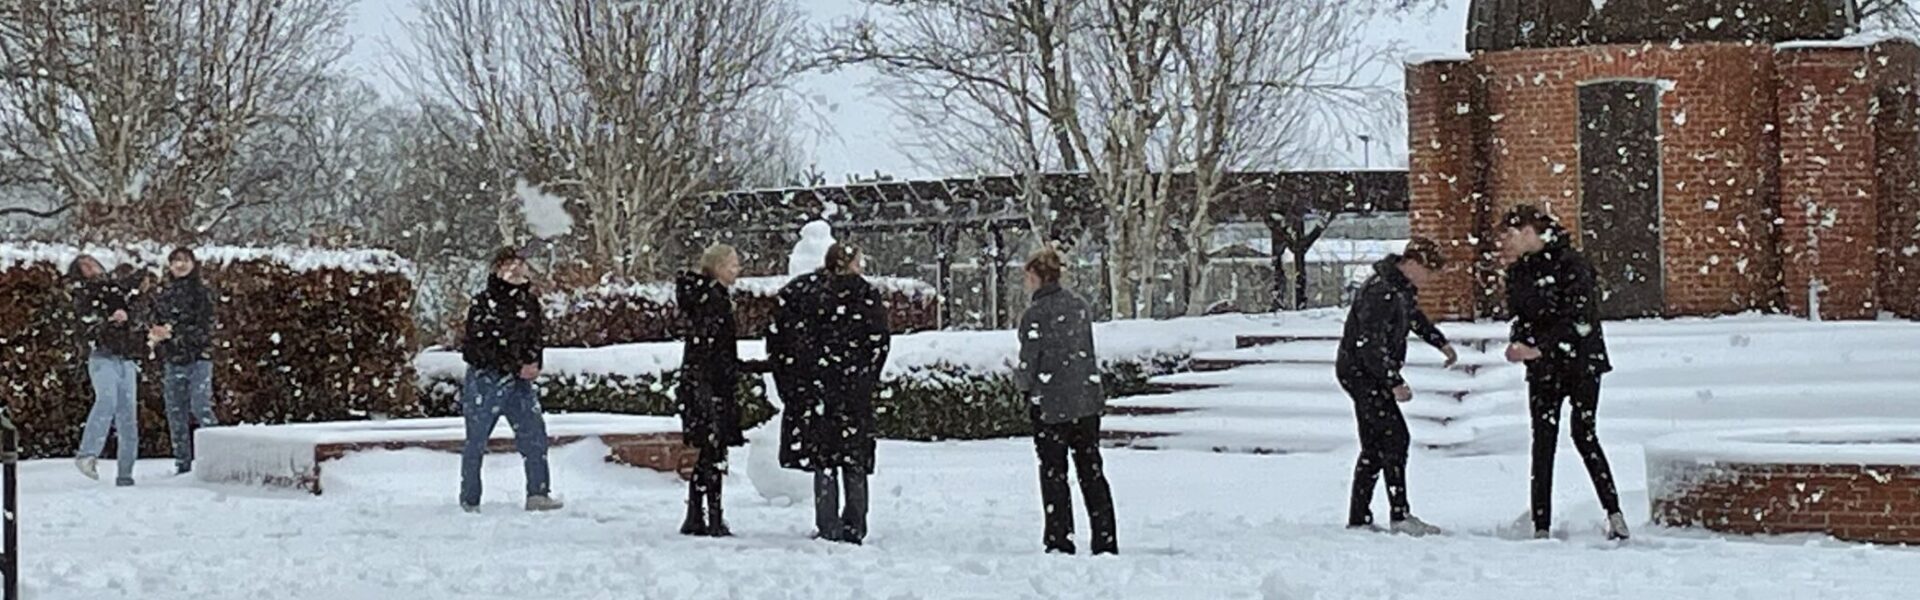 Elever slåsser i sne foran observatoriet